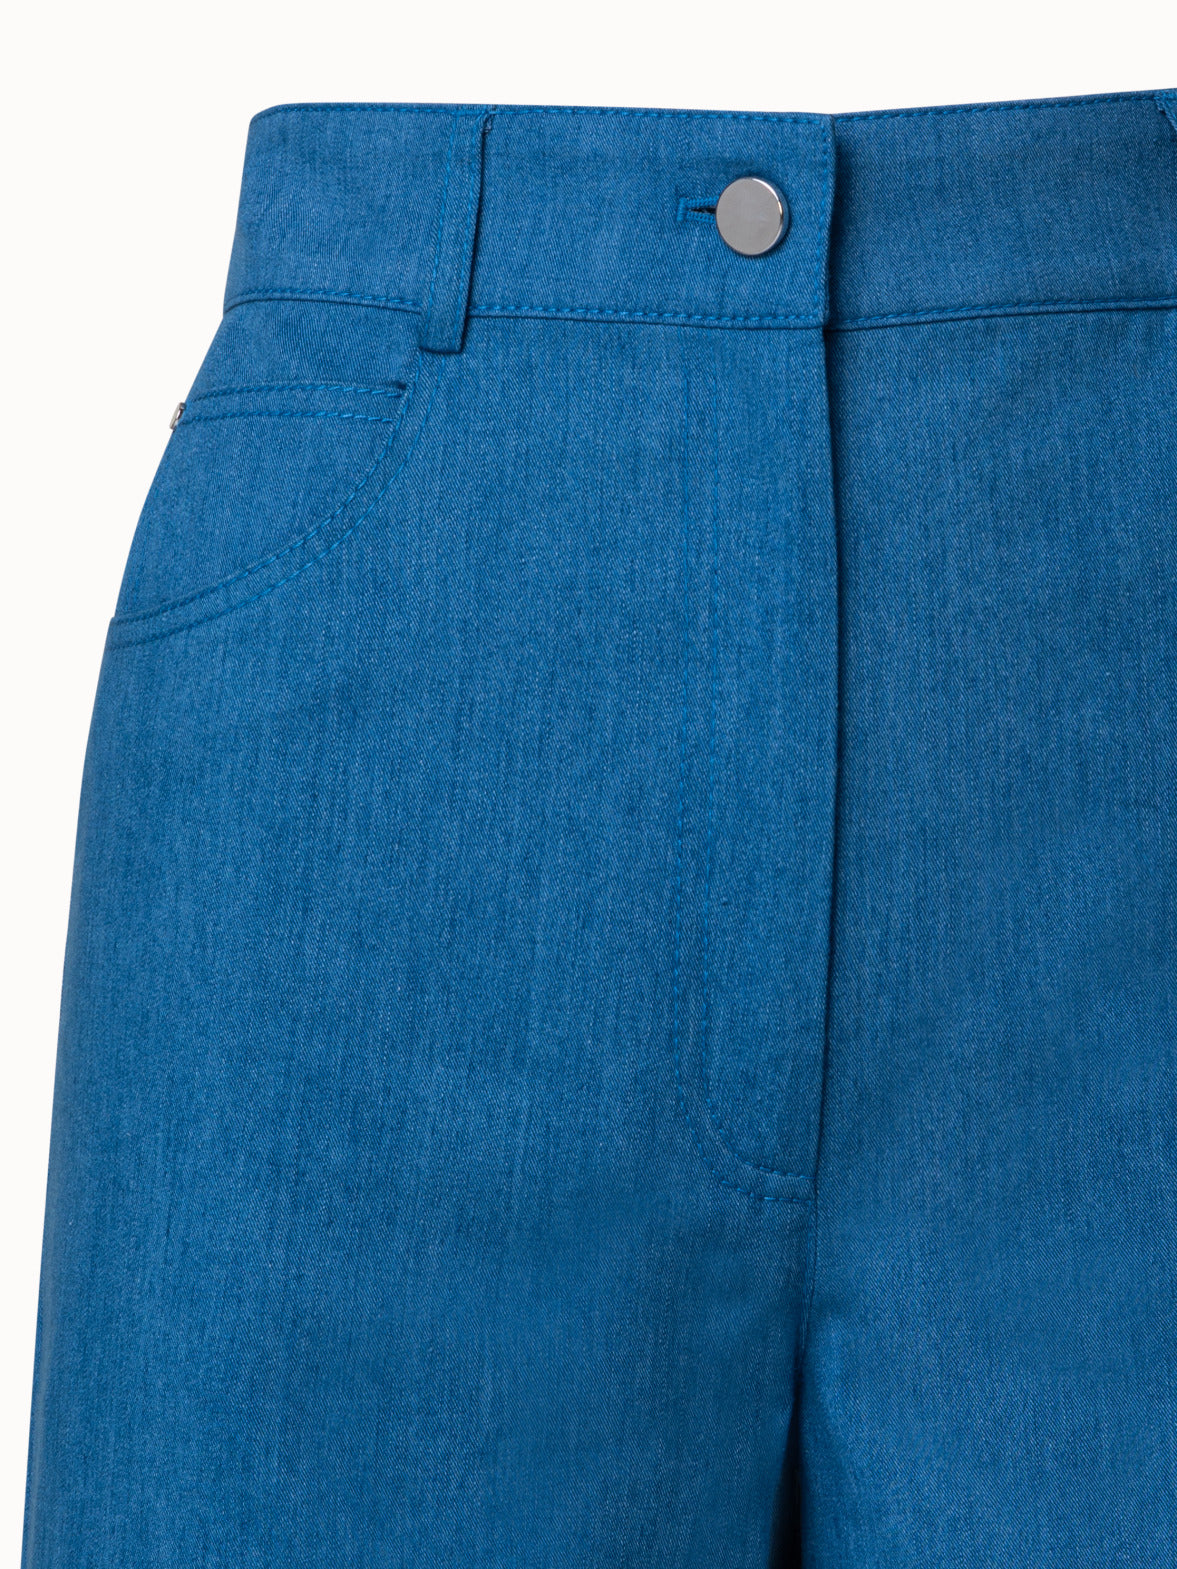 Jeans & Trousers, Sofft Cotton Legis